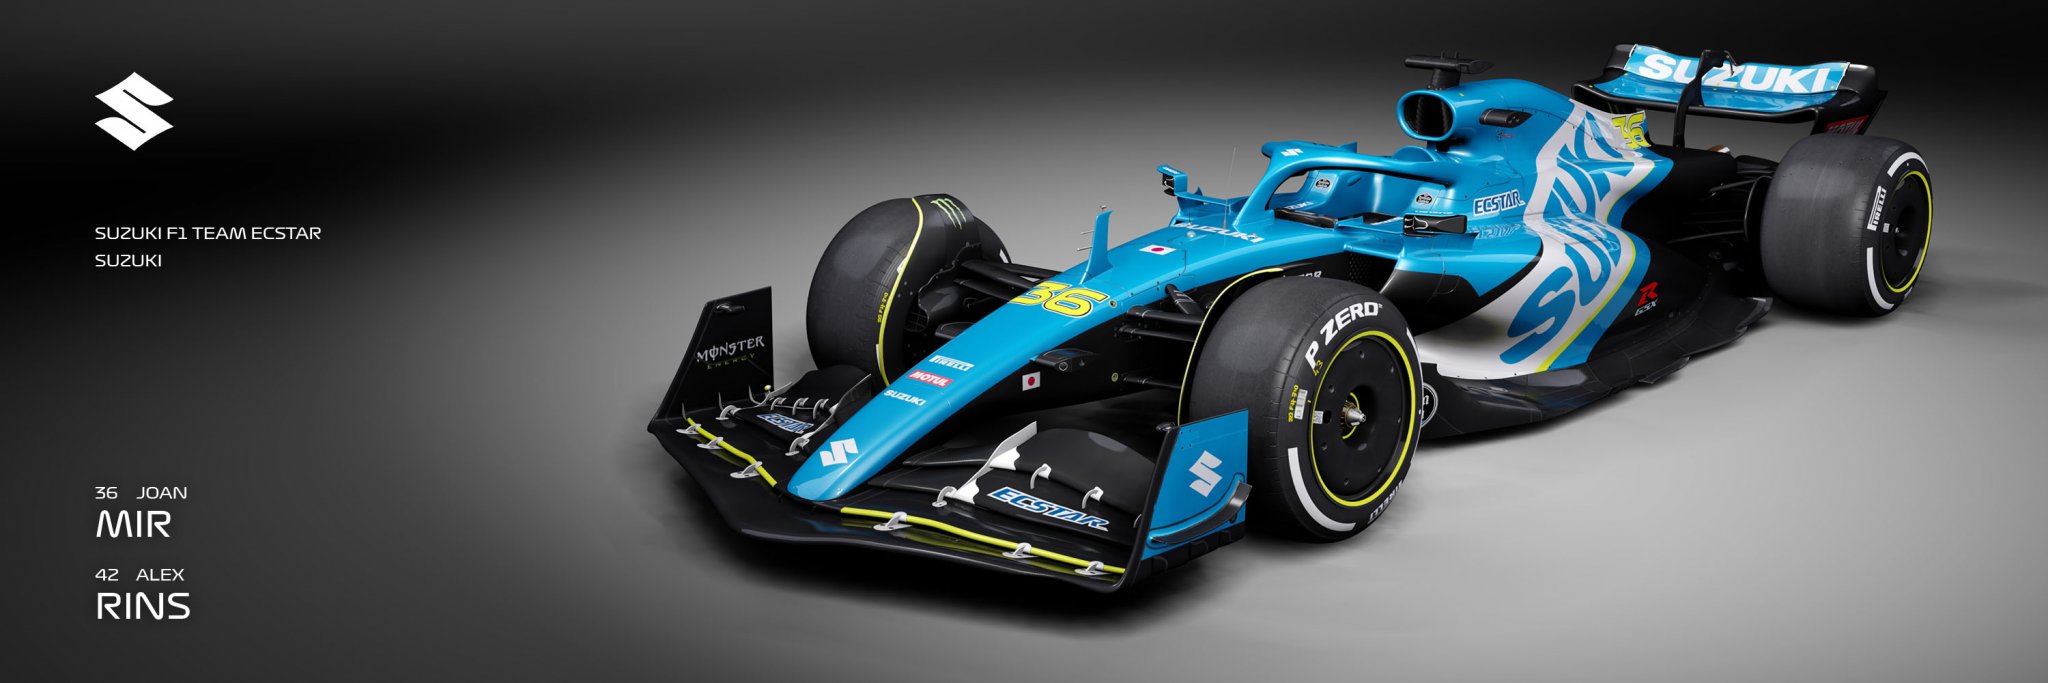 F1 Concept Preview - Suzuki F1 Team.jpg